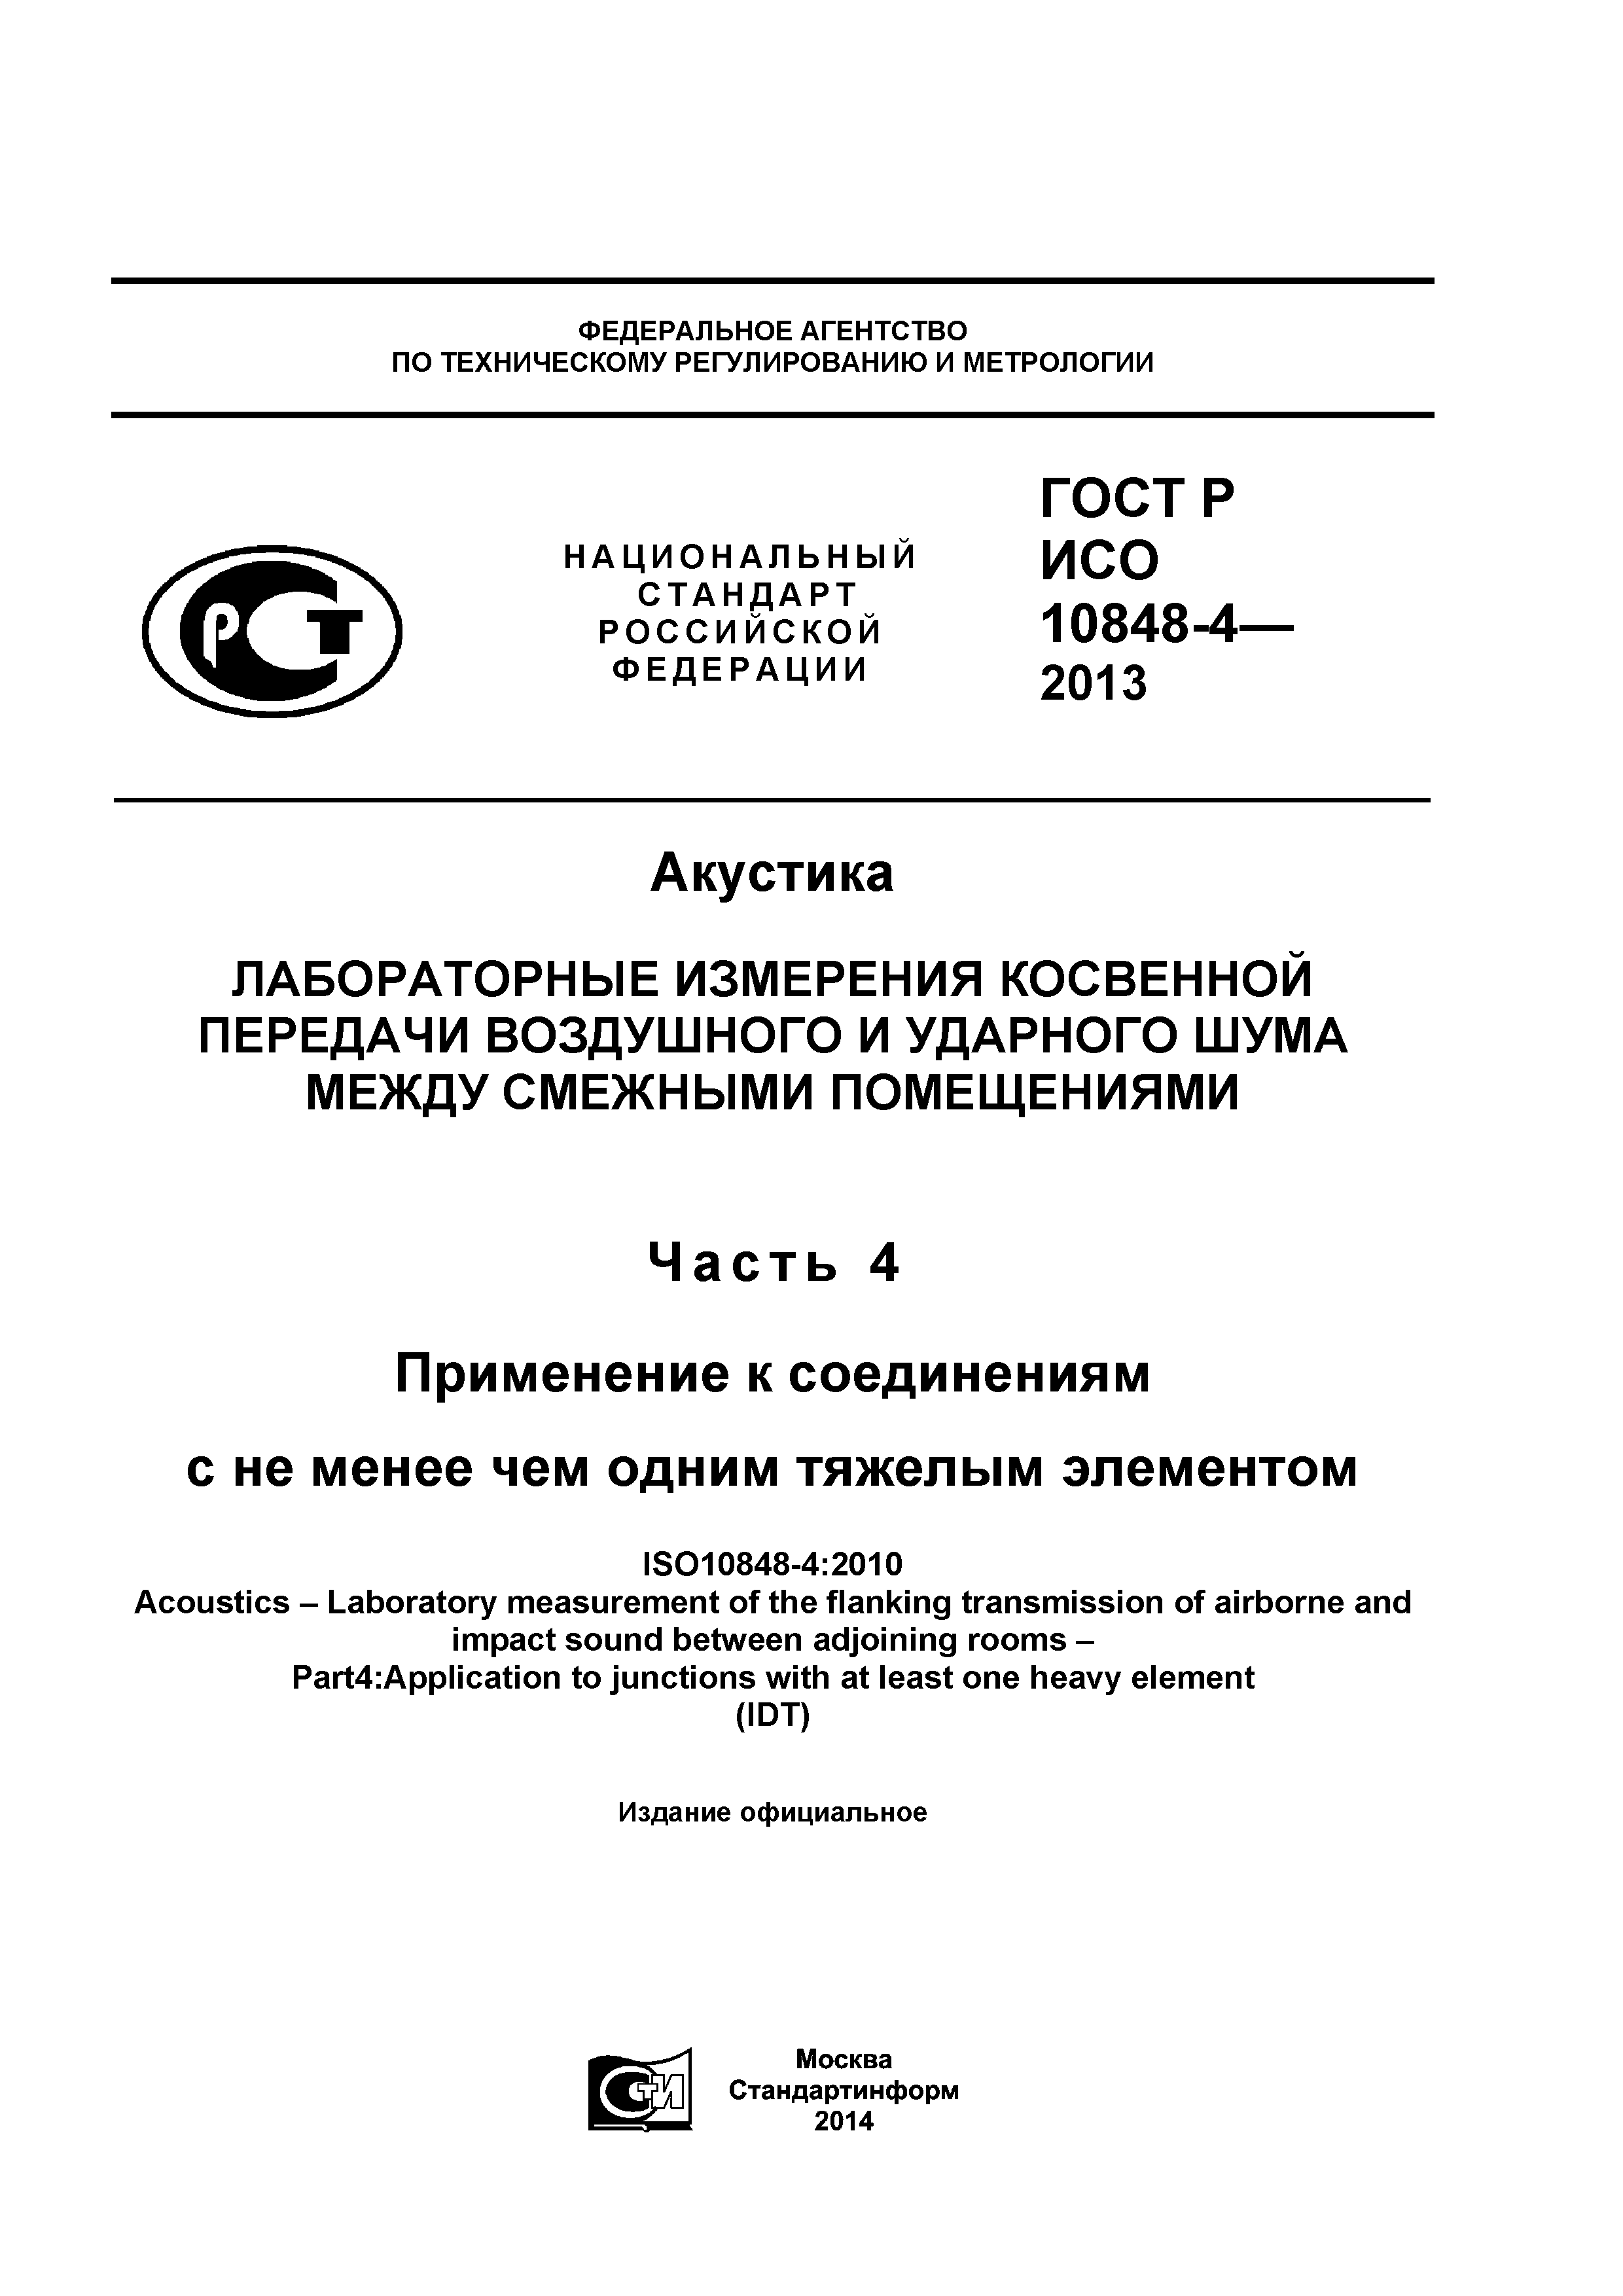 ГОСТ Р ИСО 10848-4-2013